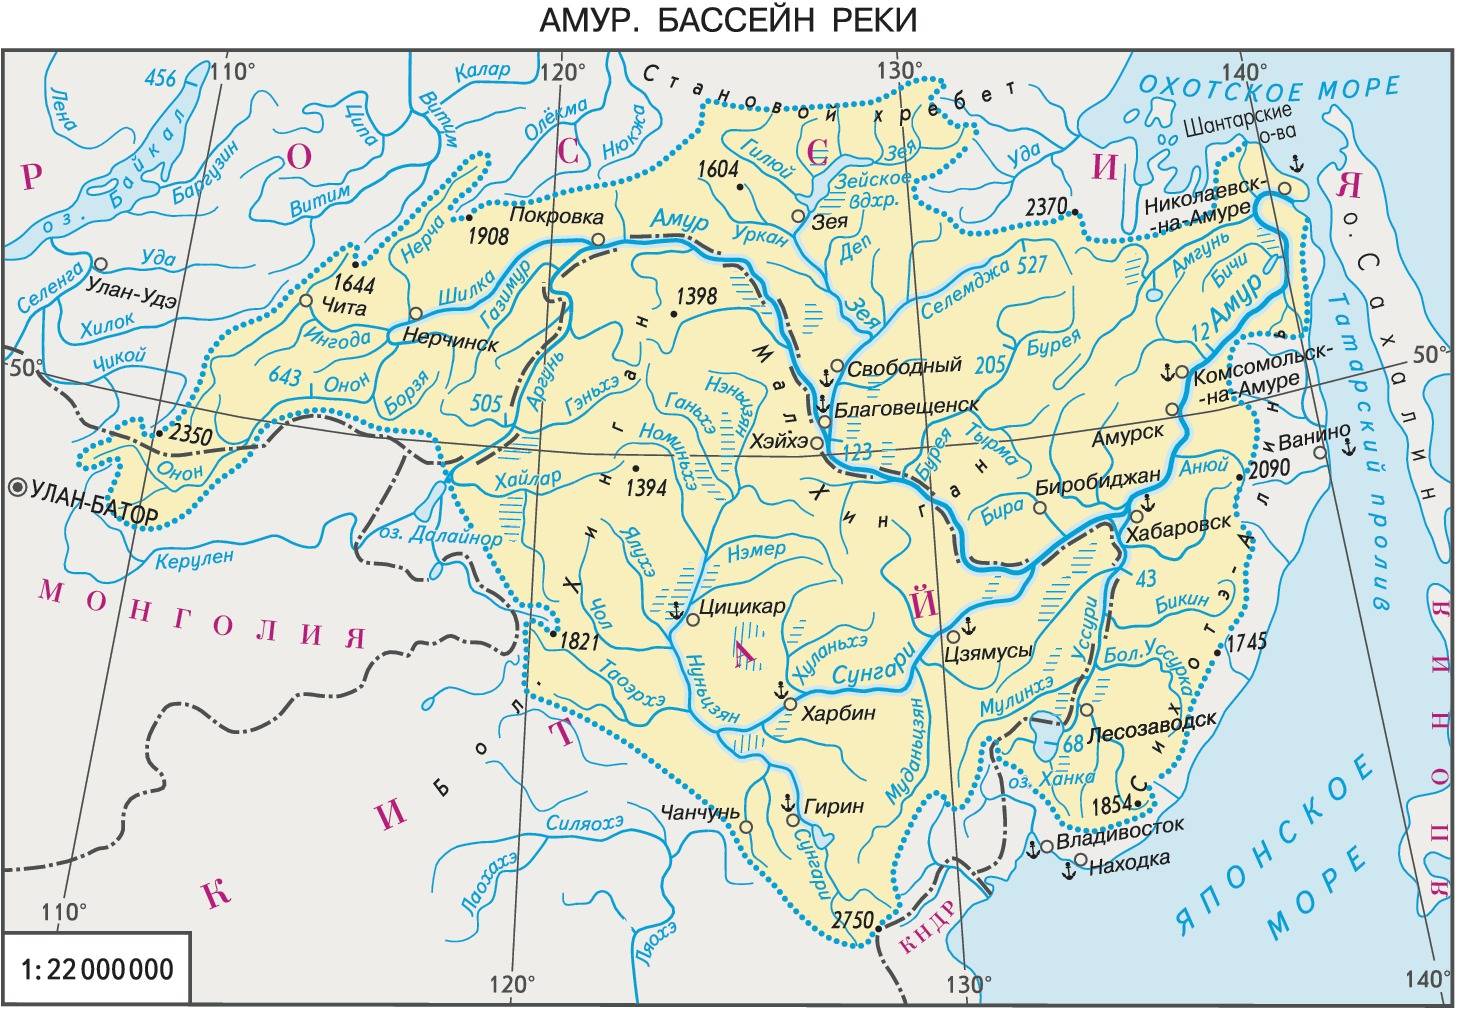 Река амур на карте россии. где находится исток, устье, фото, описание, длина, глубина, направление течения с городами, протяженность, куда впадает